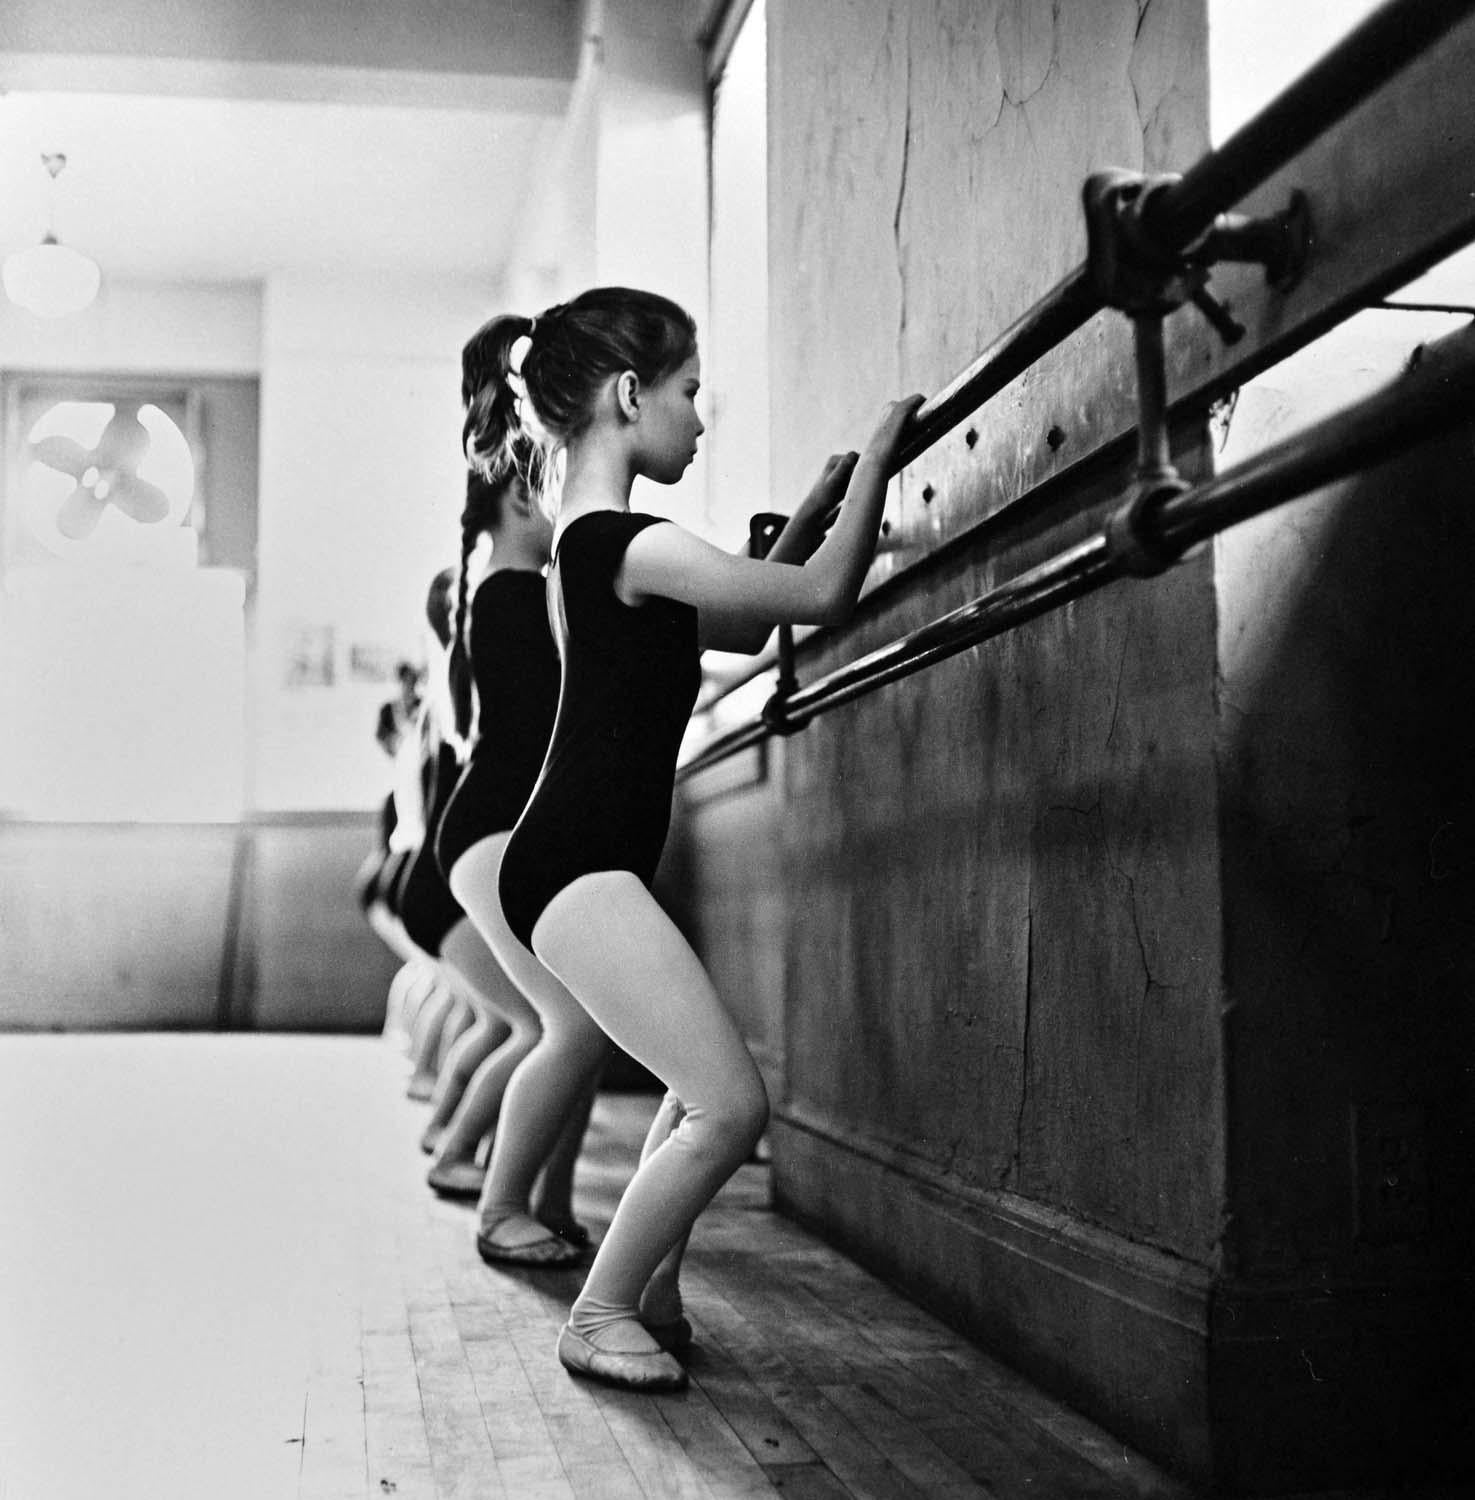 11 x 14" alte Silbergelatine-Fotografie des American Ballet Theatre Children's Dance Class, 1961. Es ist von Jack Mitchell auf der Rückseite des Drucks signiert.  Kommt direkt aus dem Jack Mitchell Archiv mit einem Echtheitszertifikat.

Jack